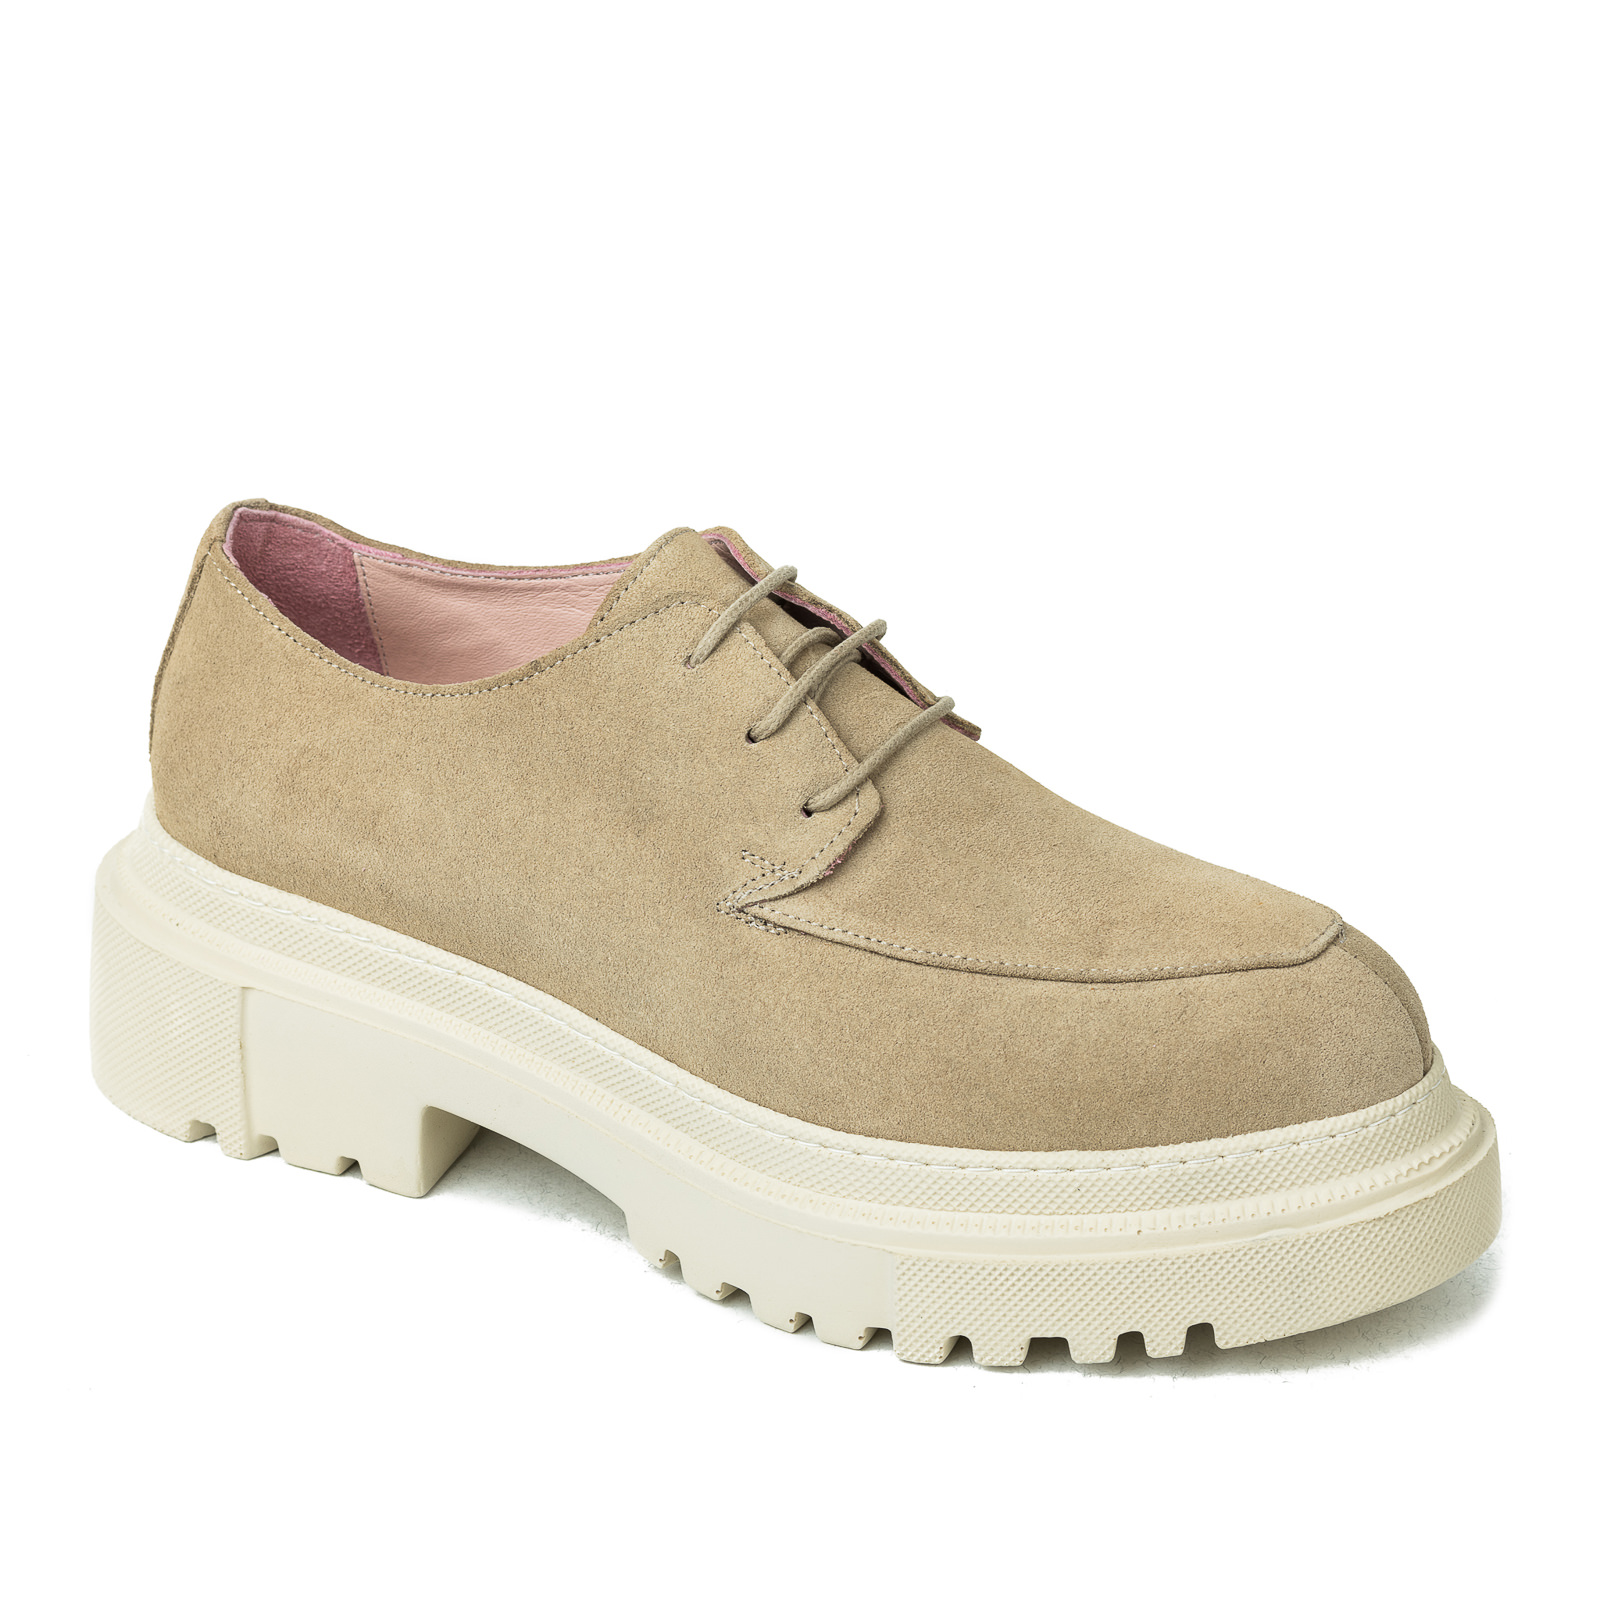 Leather shoes & flats B268 - BEIGE